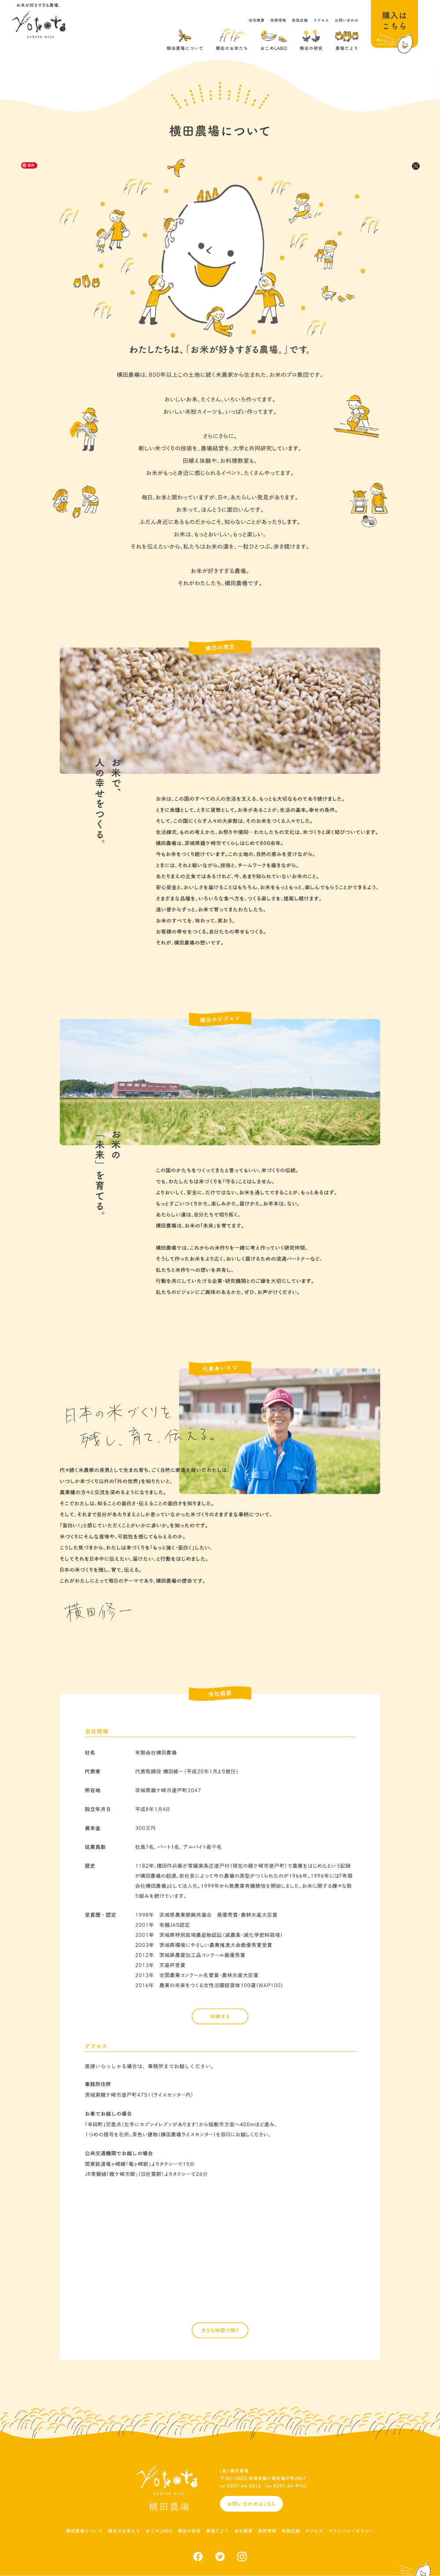 横田農場 – おいしくて安全なお米の生産直売のデザイン画像